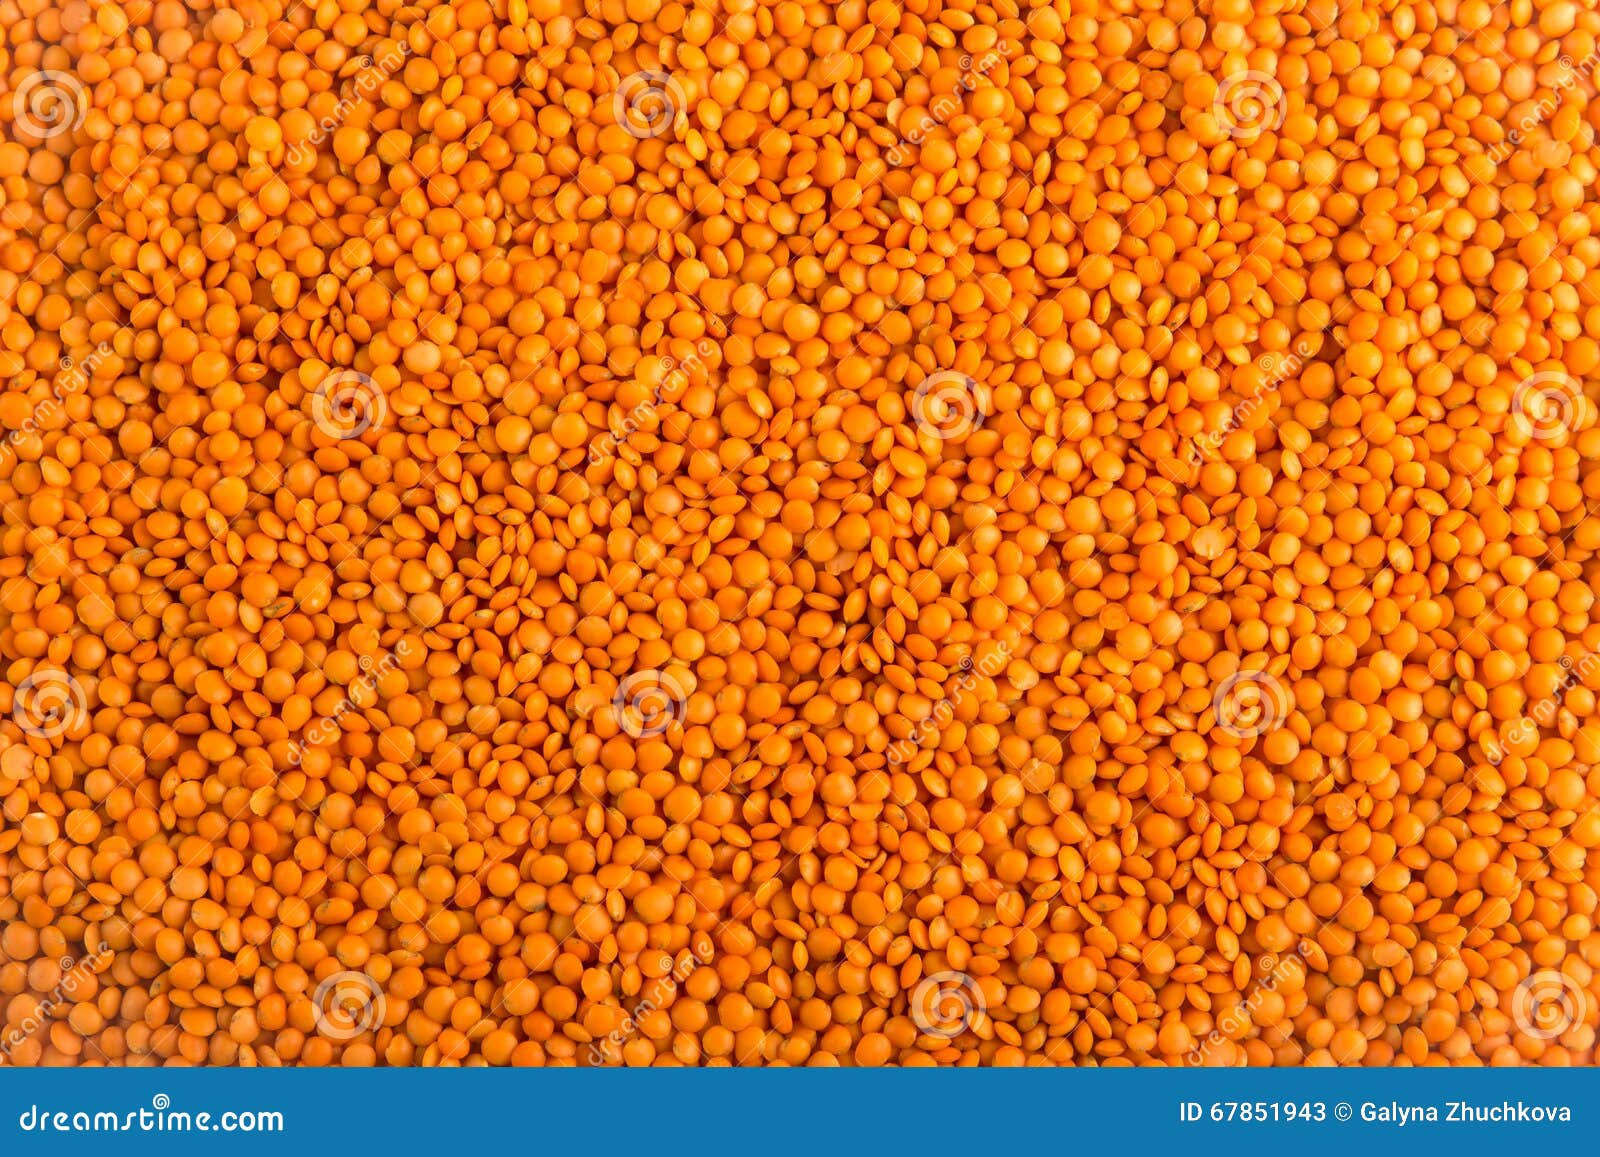 dry unbroken orange lentils texture